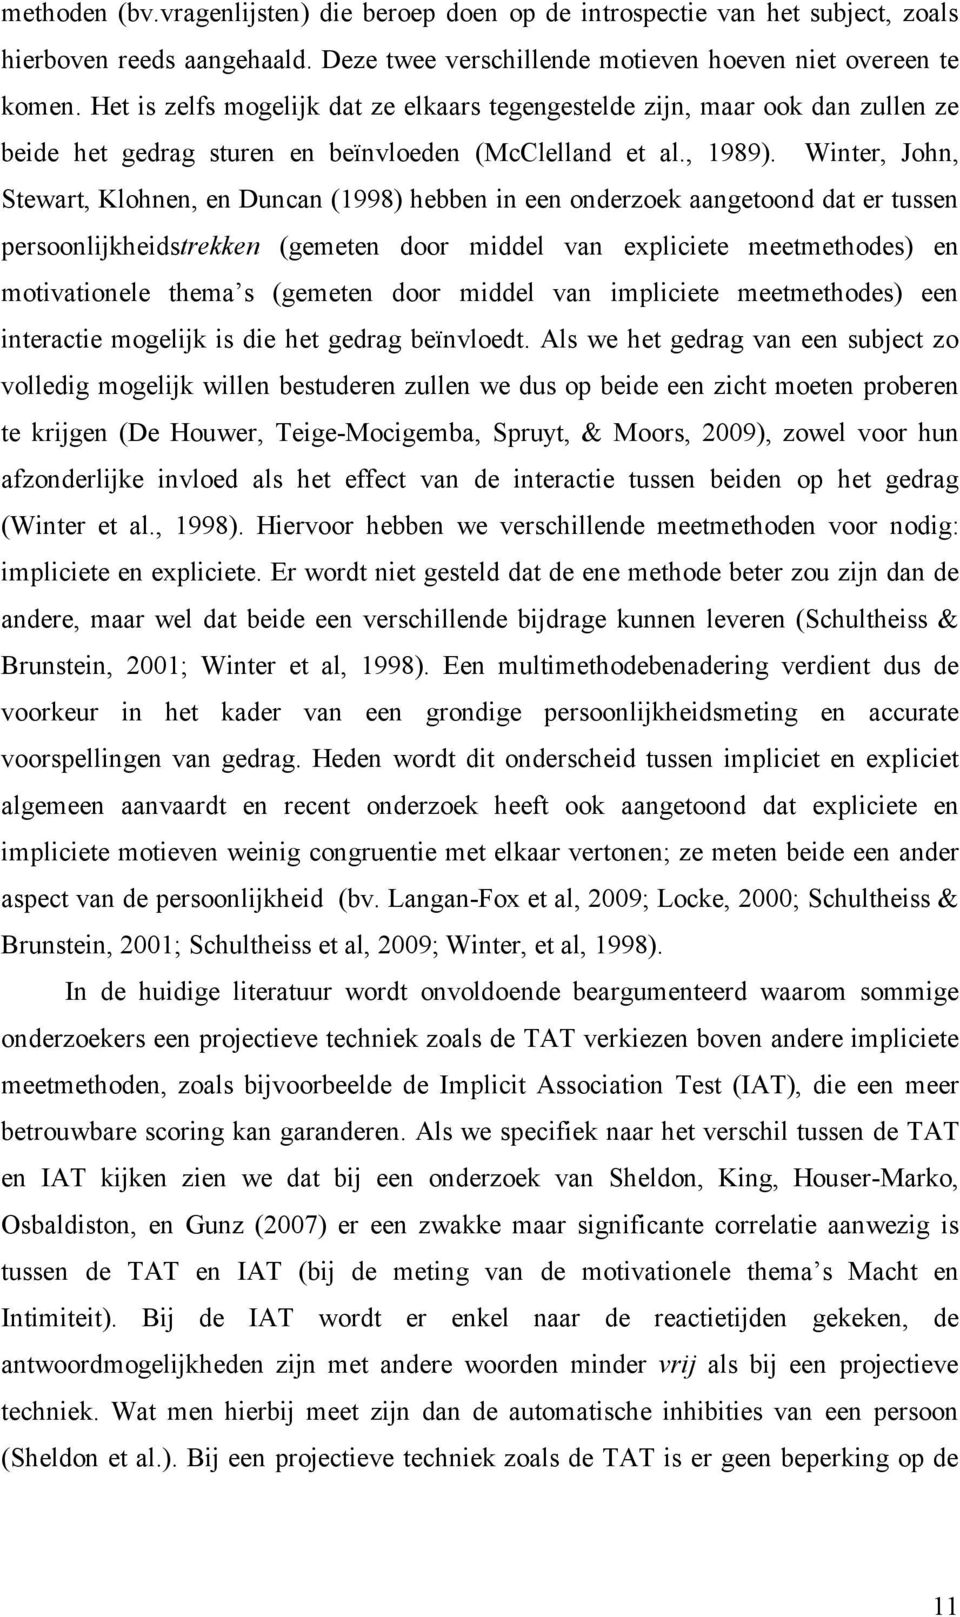 Winter, John, Stewart, Klohnen, en Duncan (1998) hebben in een onderzoek aangetoond dat er tussen persoonlijkheidstrekken (gemeten door middel van expliciete meetmethodes) en motivationele thema s